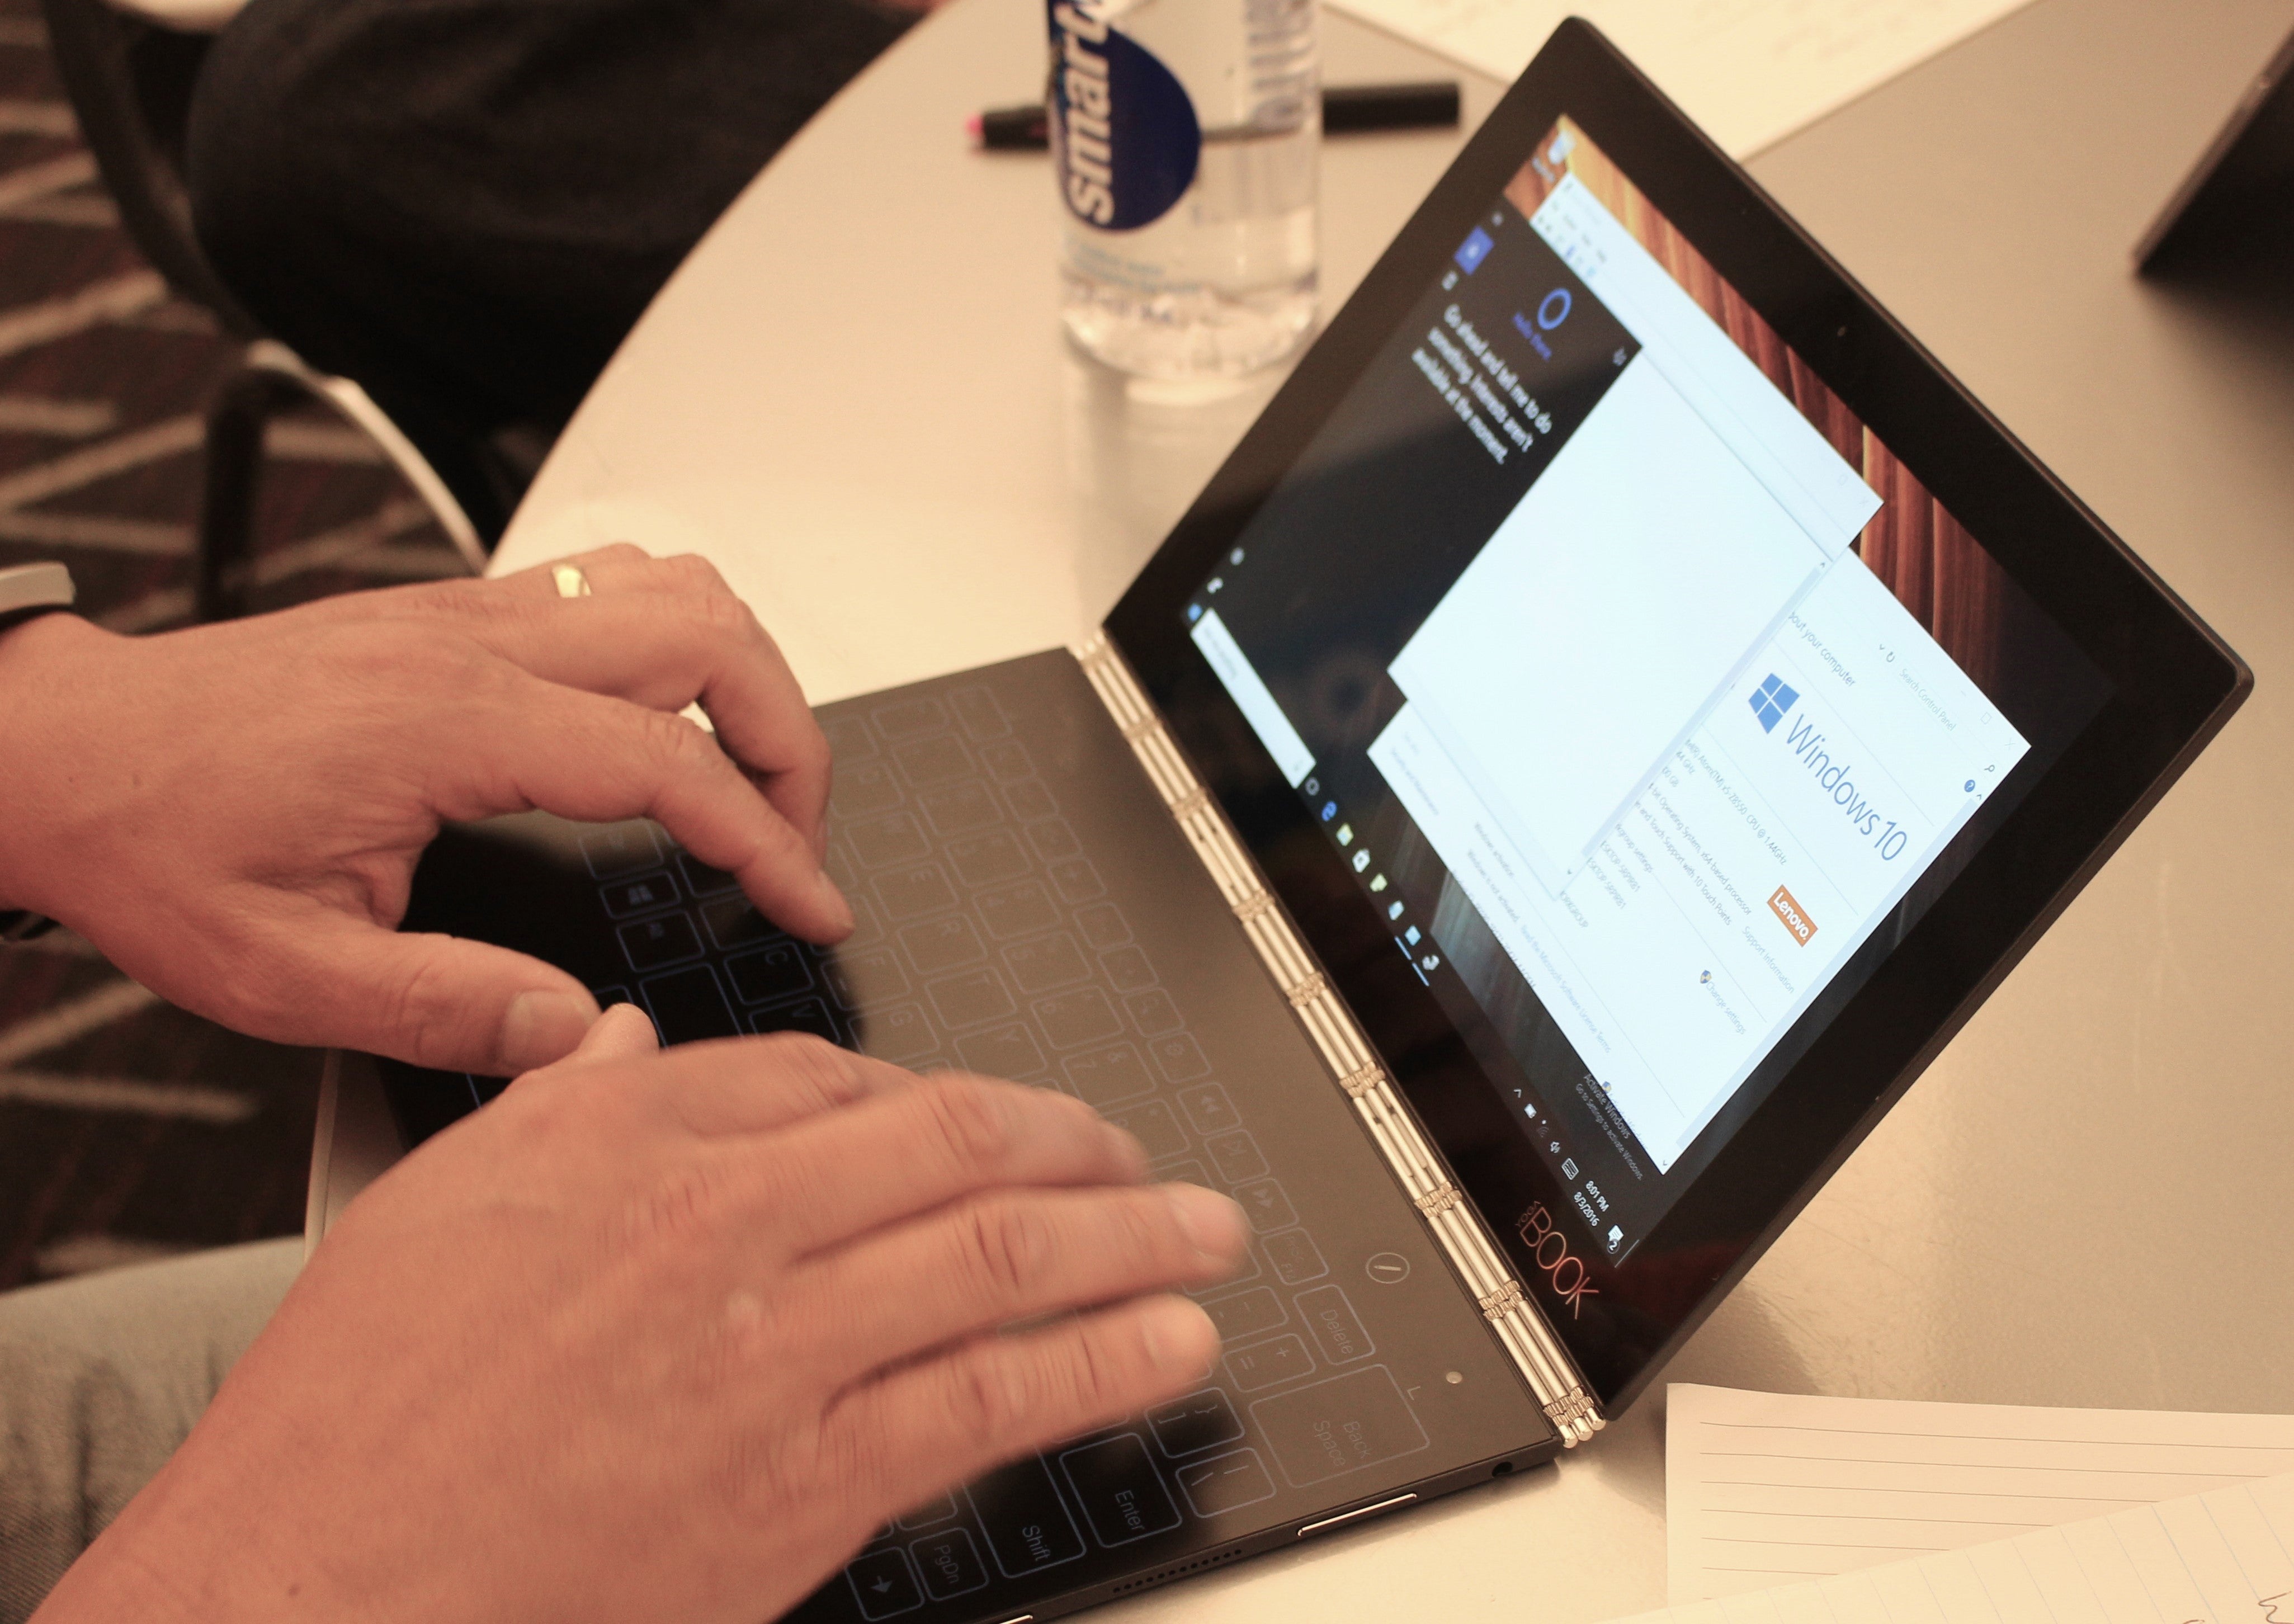 Conheça “Lenovo Yoga Book Hands On” o notebook sem teclado do mercado